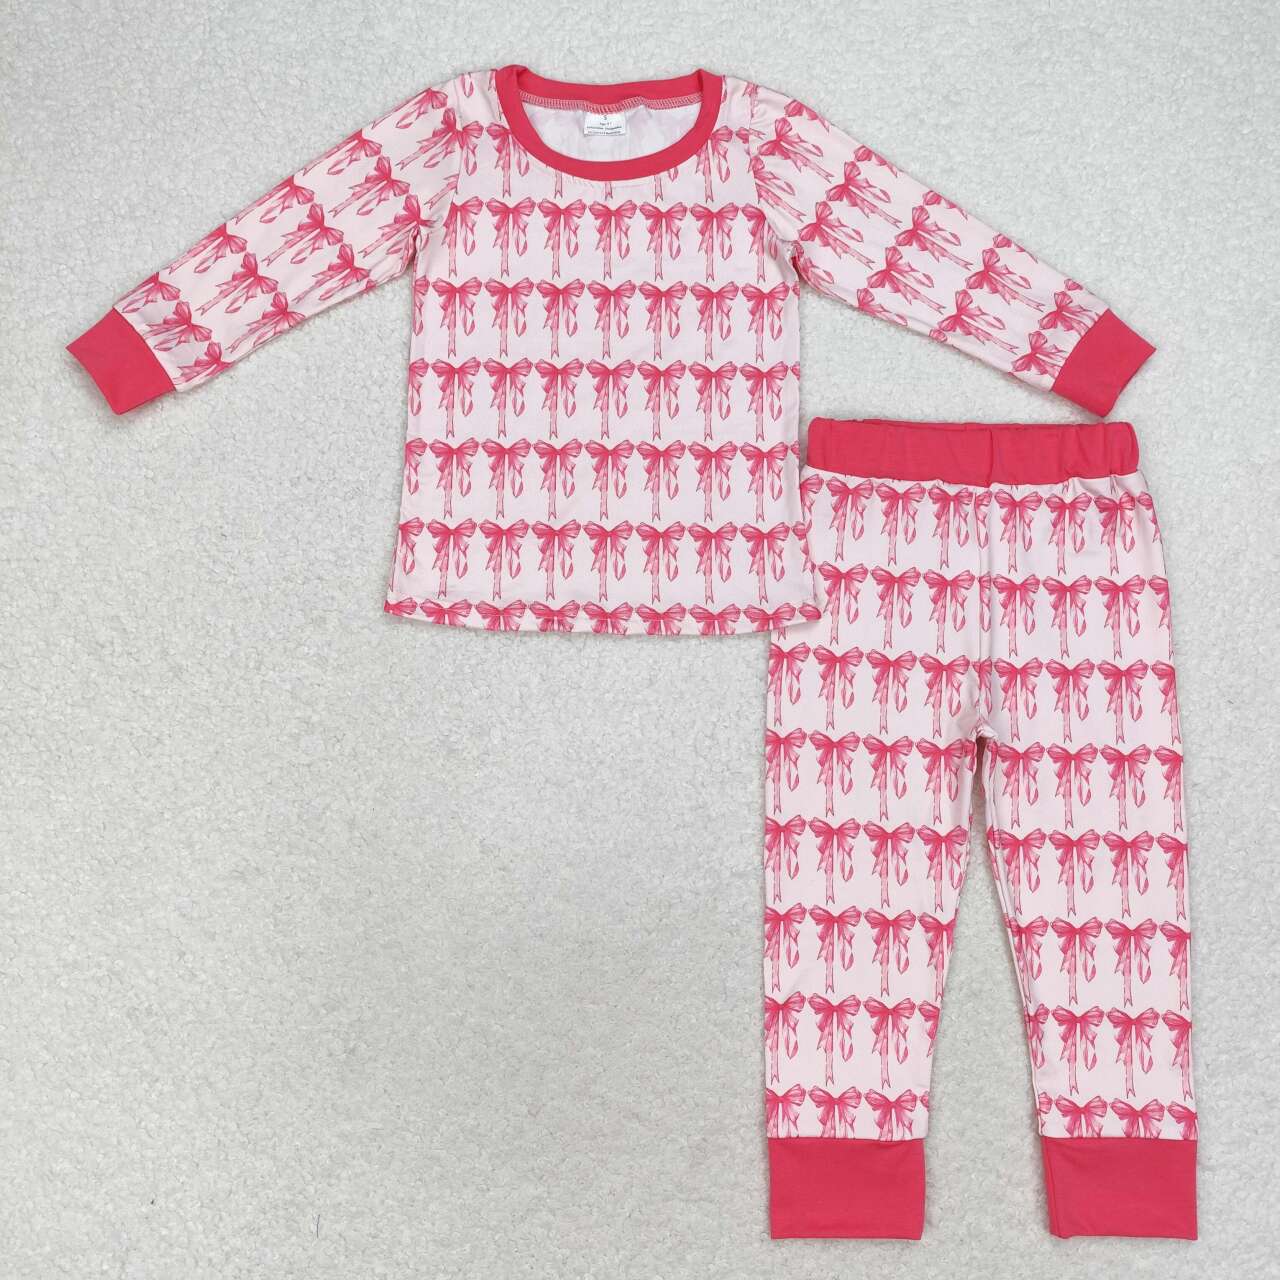 Pink Bows Print Sisters Matching Pajamas Clothes